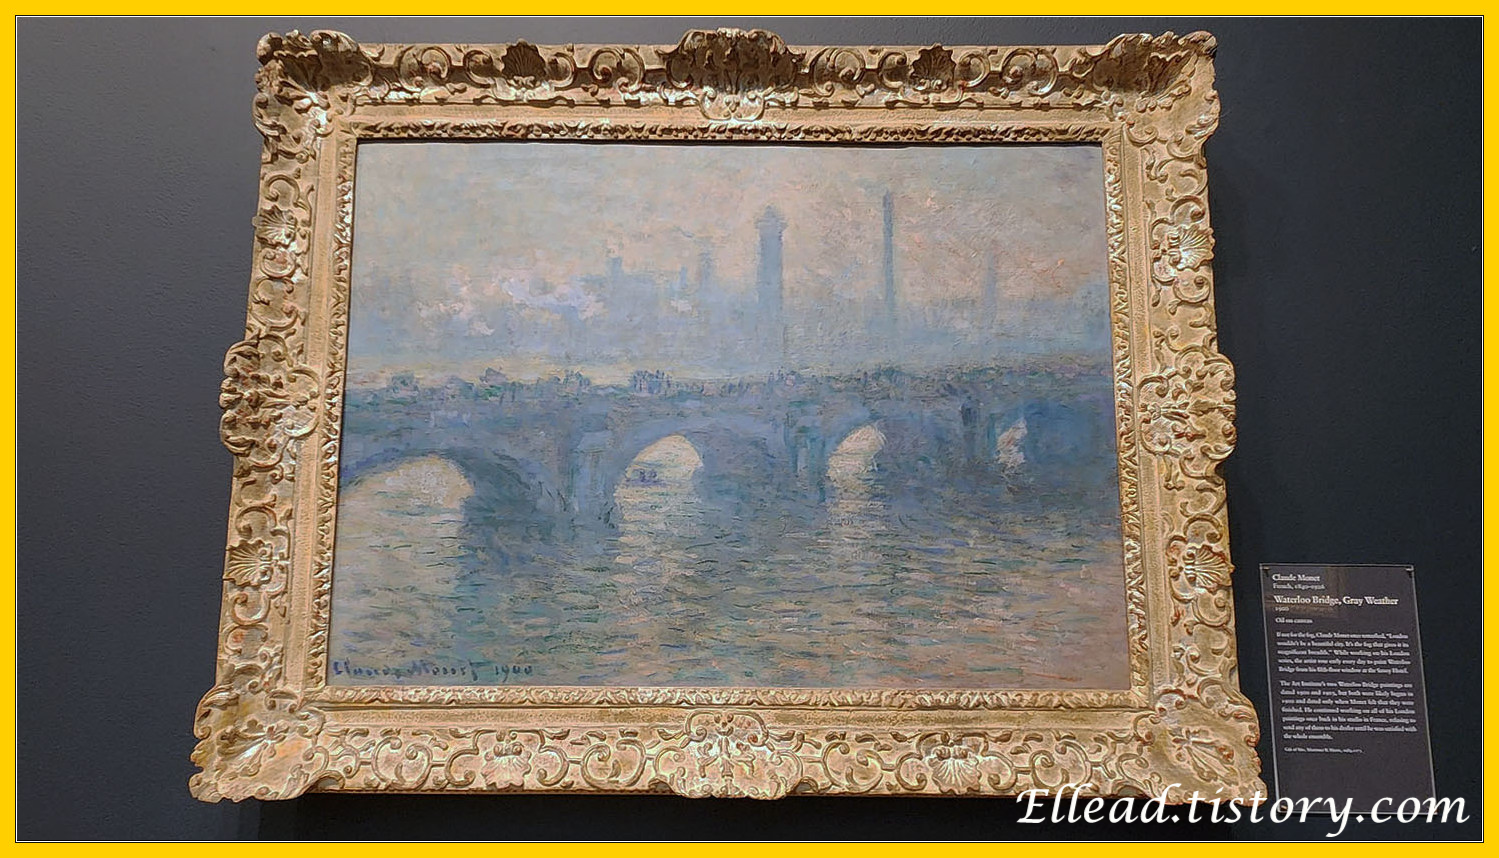 모네(Monet)&#44; Waterloo Bridge&#44; Gray Weather 1